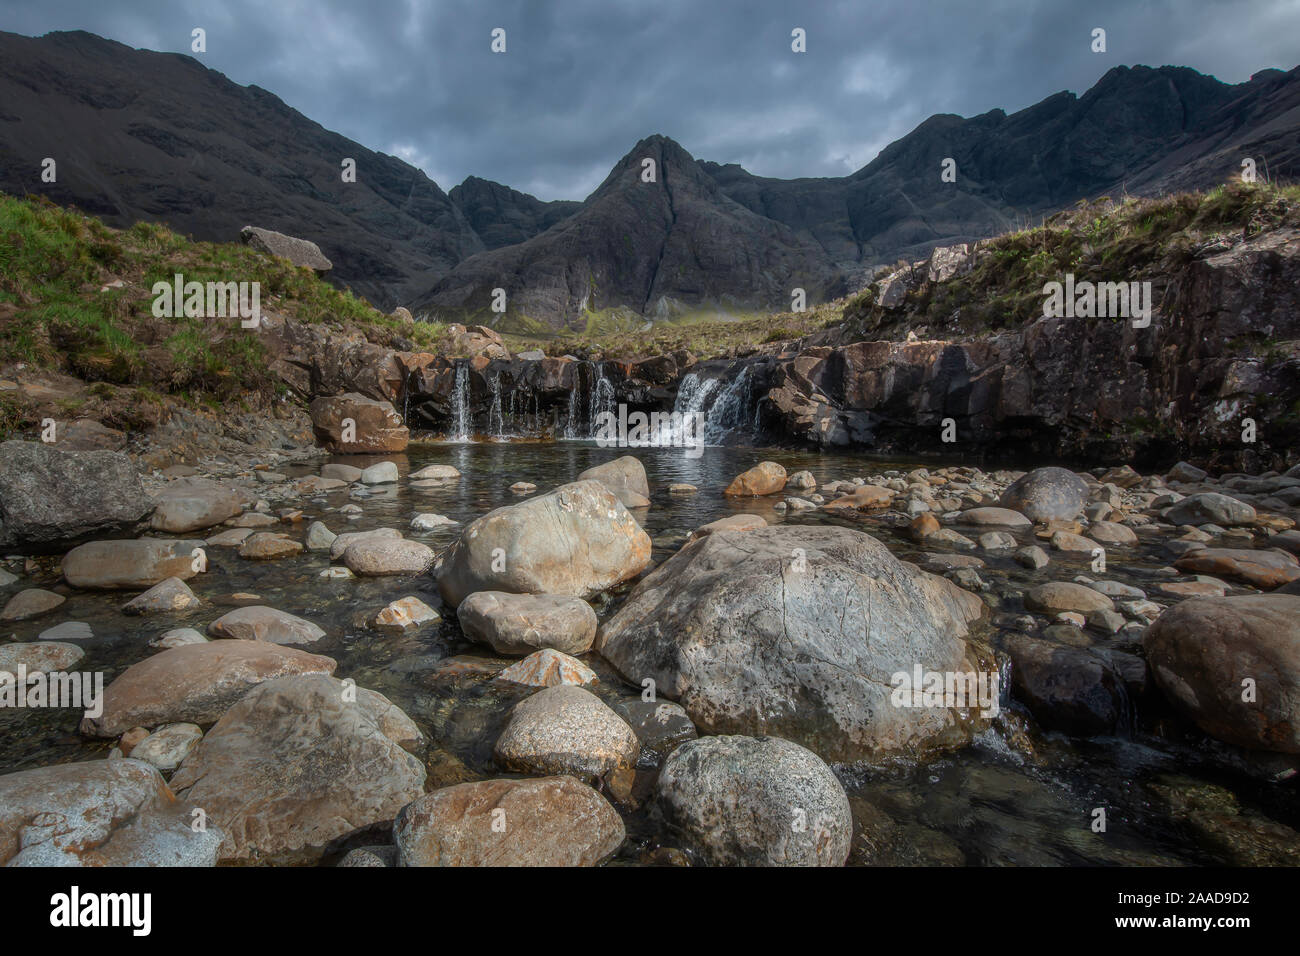 Ciel dramatique au-dessus de pools de fées, des étangs aux eaux cristallines, de cascades et de rochers colorés en scenic Mountain Valley sur l'île de Skye, Écosse, Royaume-Uni. Banque D'Images